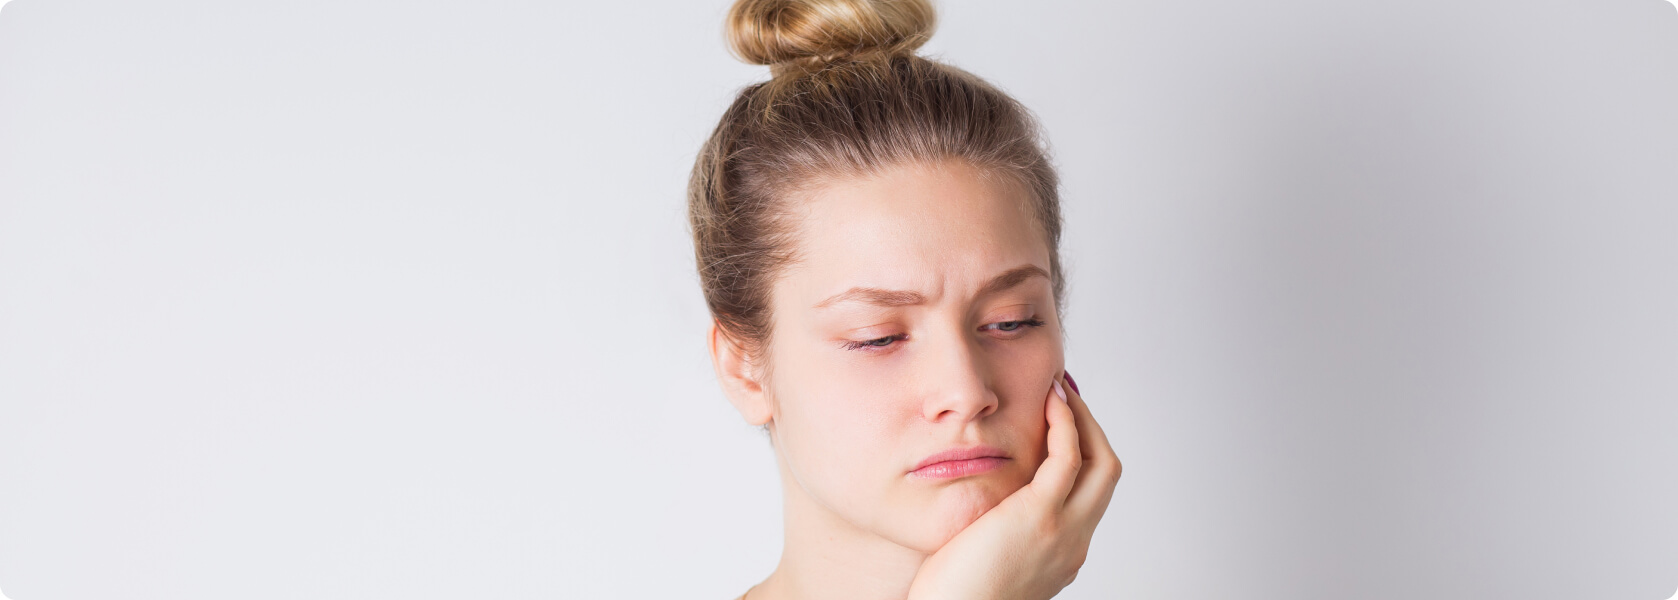 Zahnschmerzen - Welche Erkrankungen können Zahnschmerzen sonst noch auslösen?